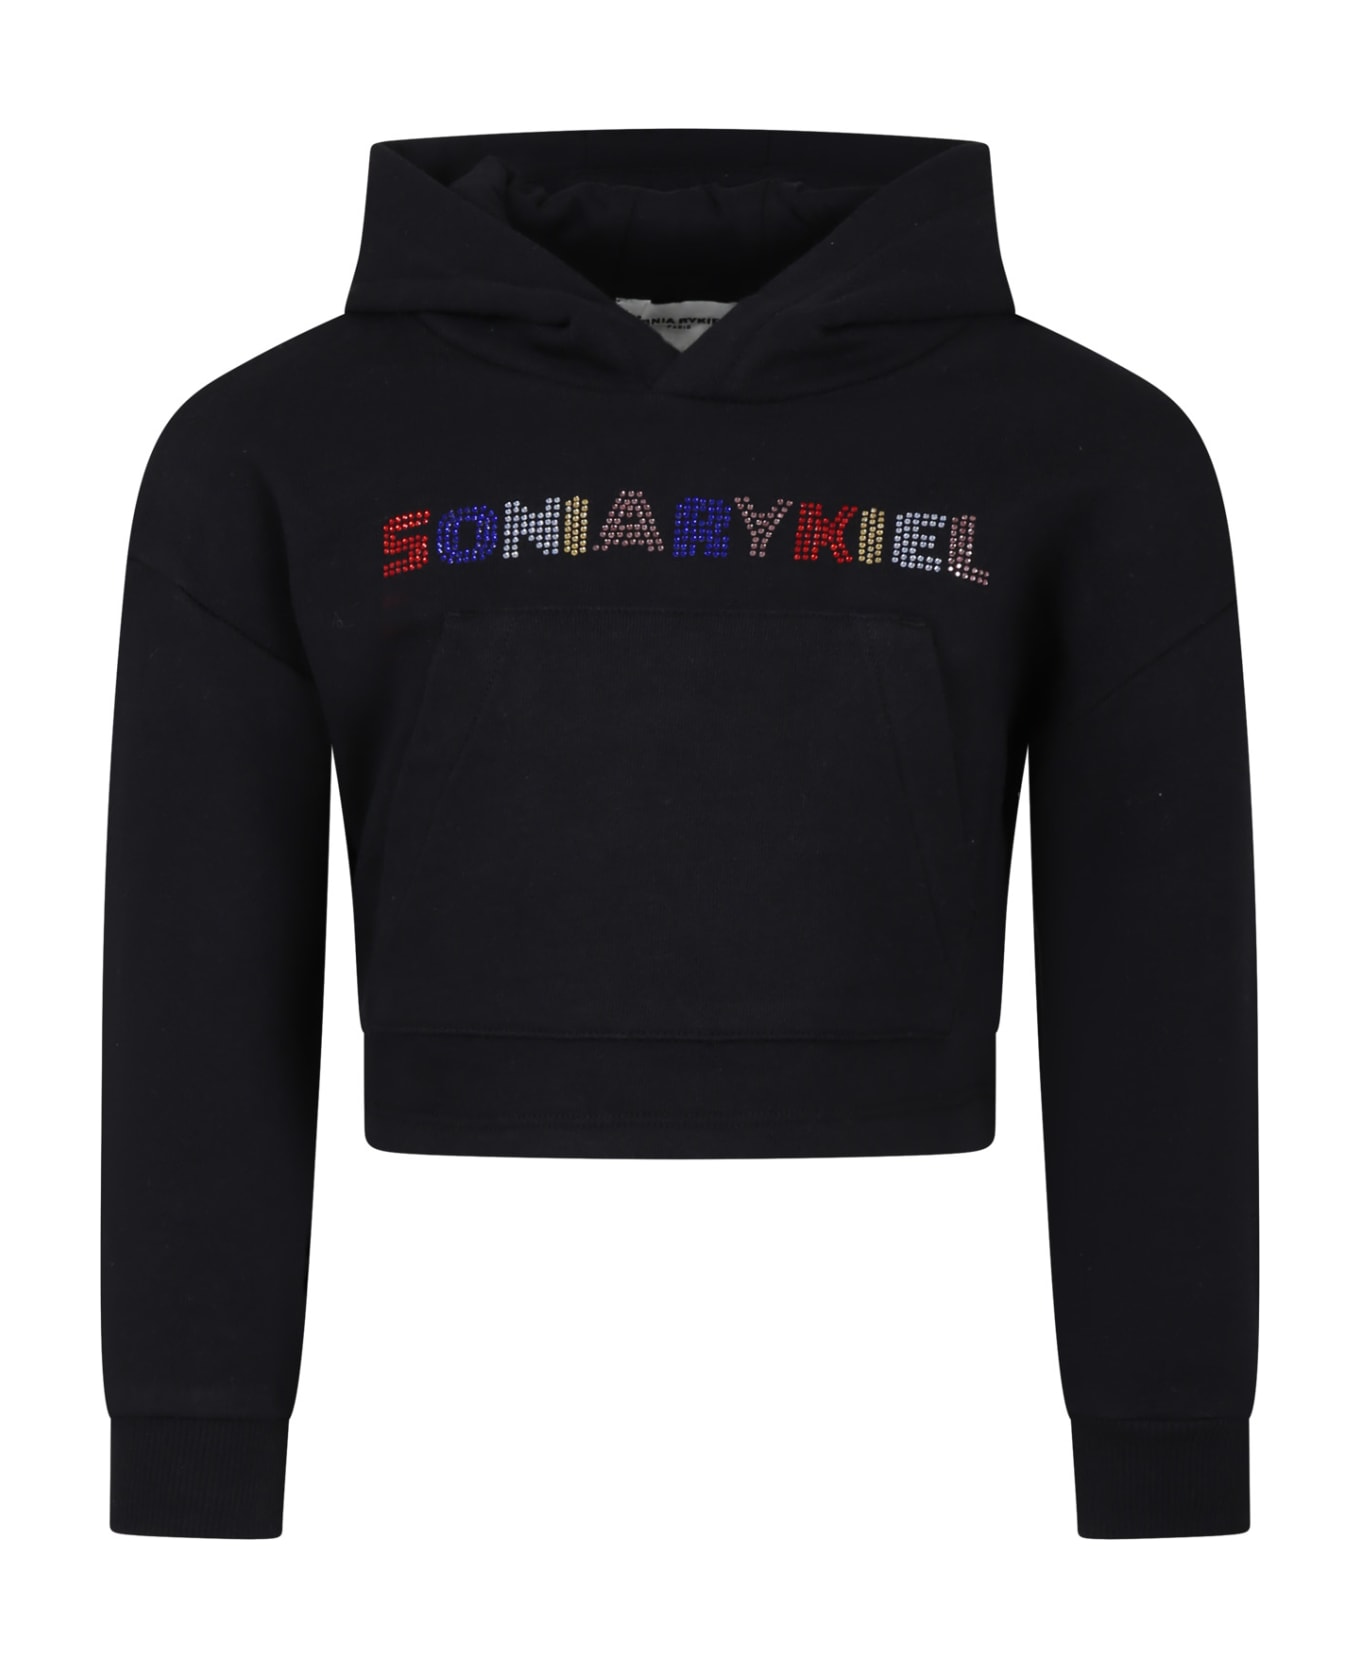 Rykiel Enfant Black Sweatshirt For Girl With Rhinestone Logo - Black